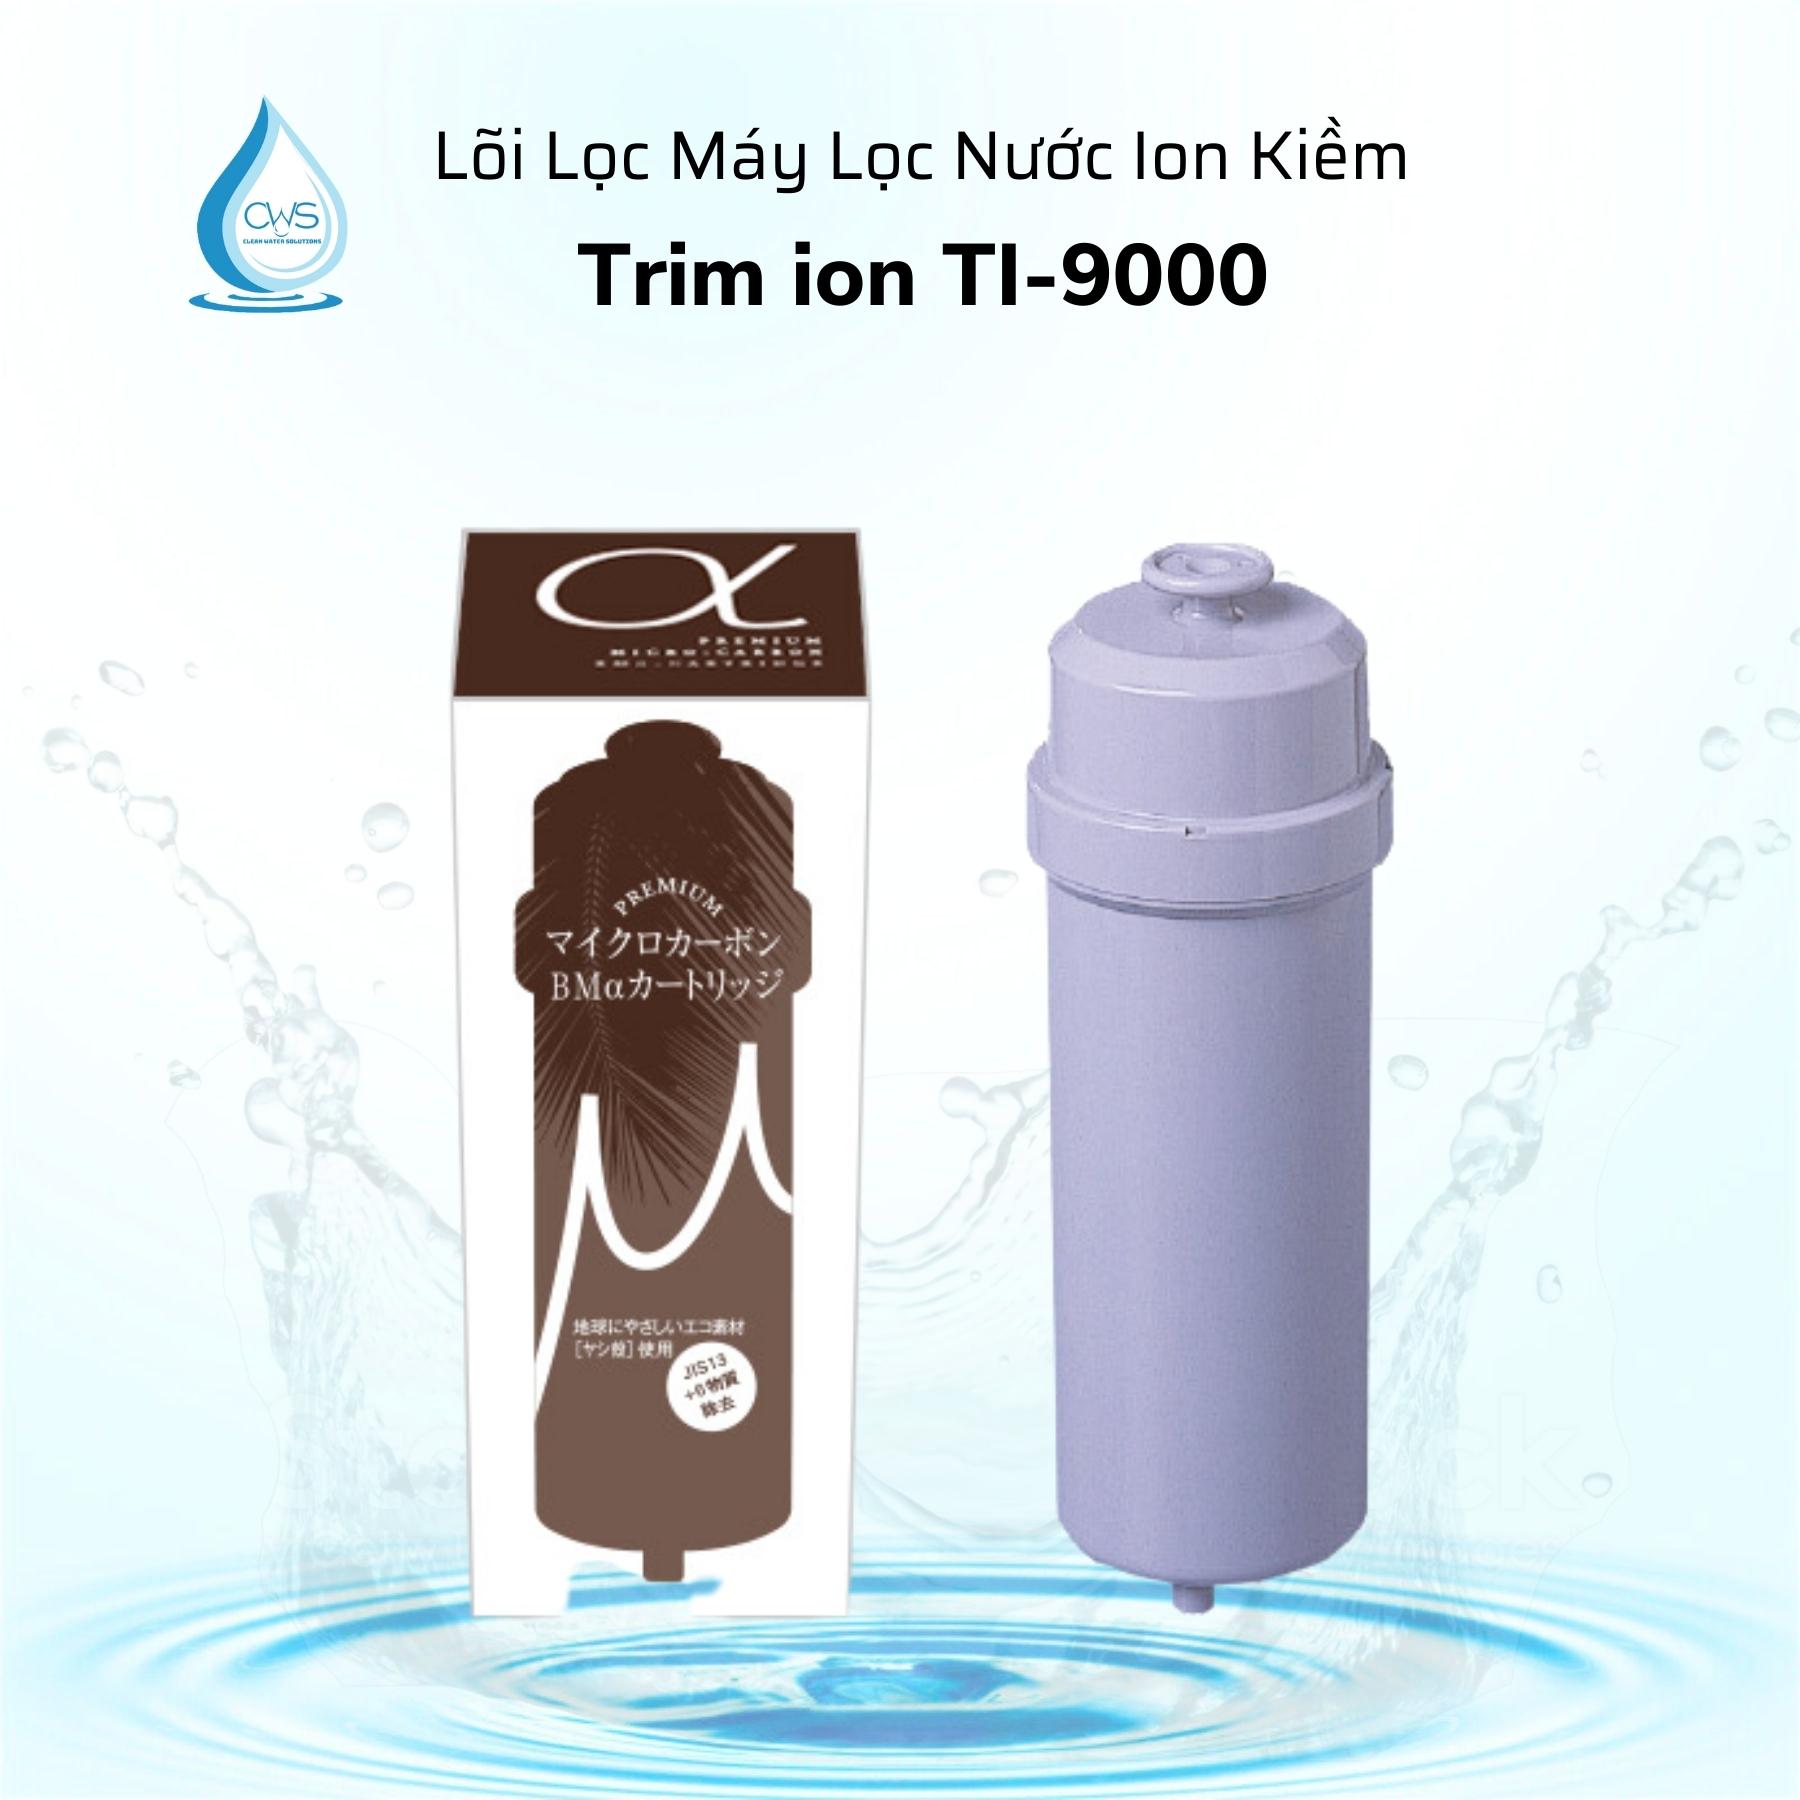 Lõi Lọc Trim Ion Ti-9000 - Sử dụng cho máy lọc nước ion kiềm